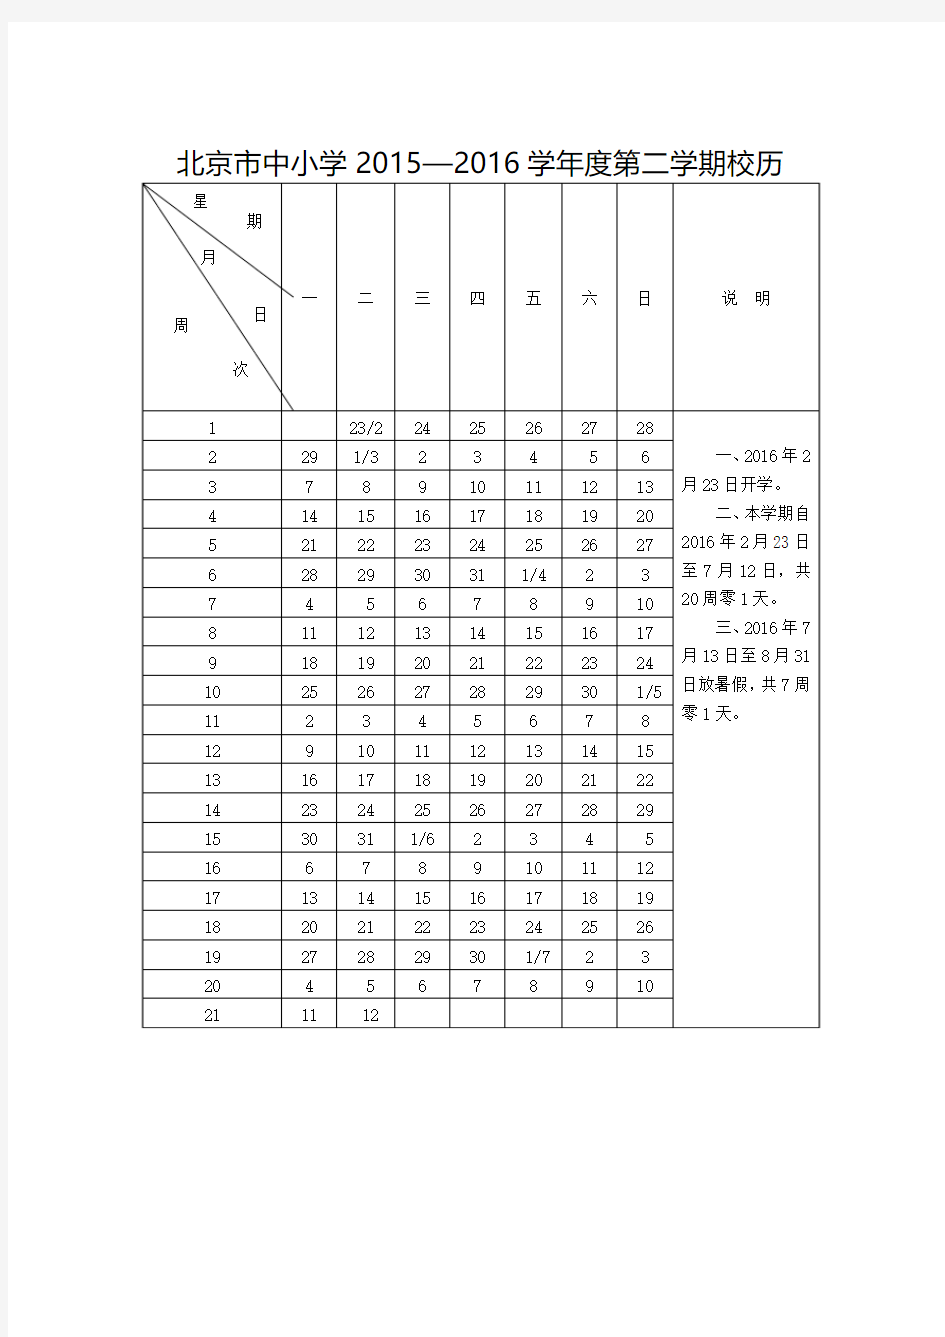 北京市中小学2015—2016学年度第二学期校历